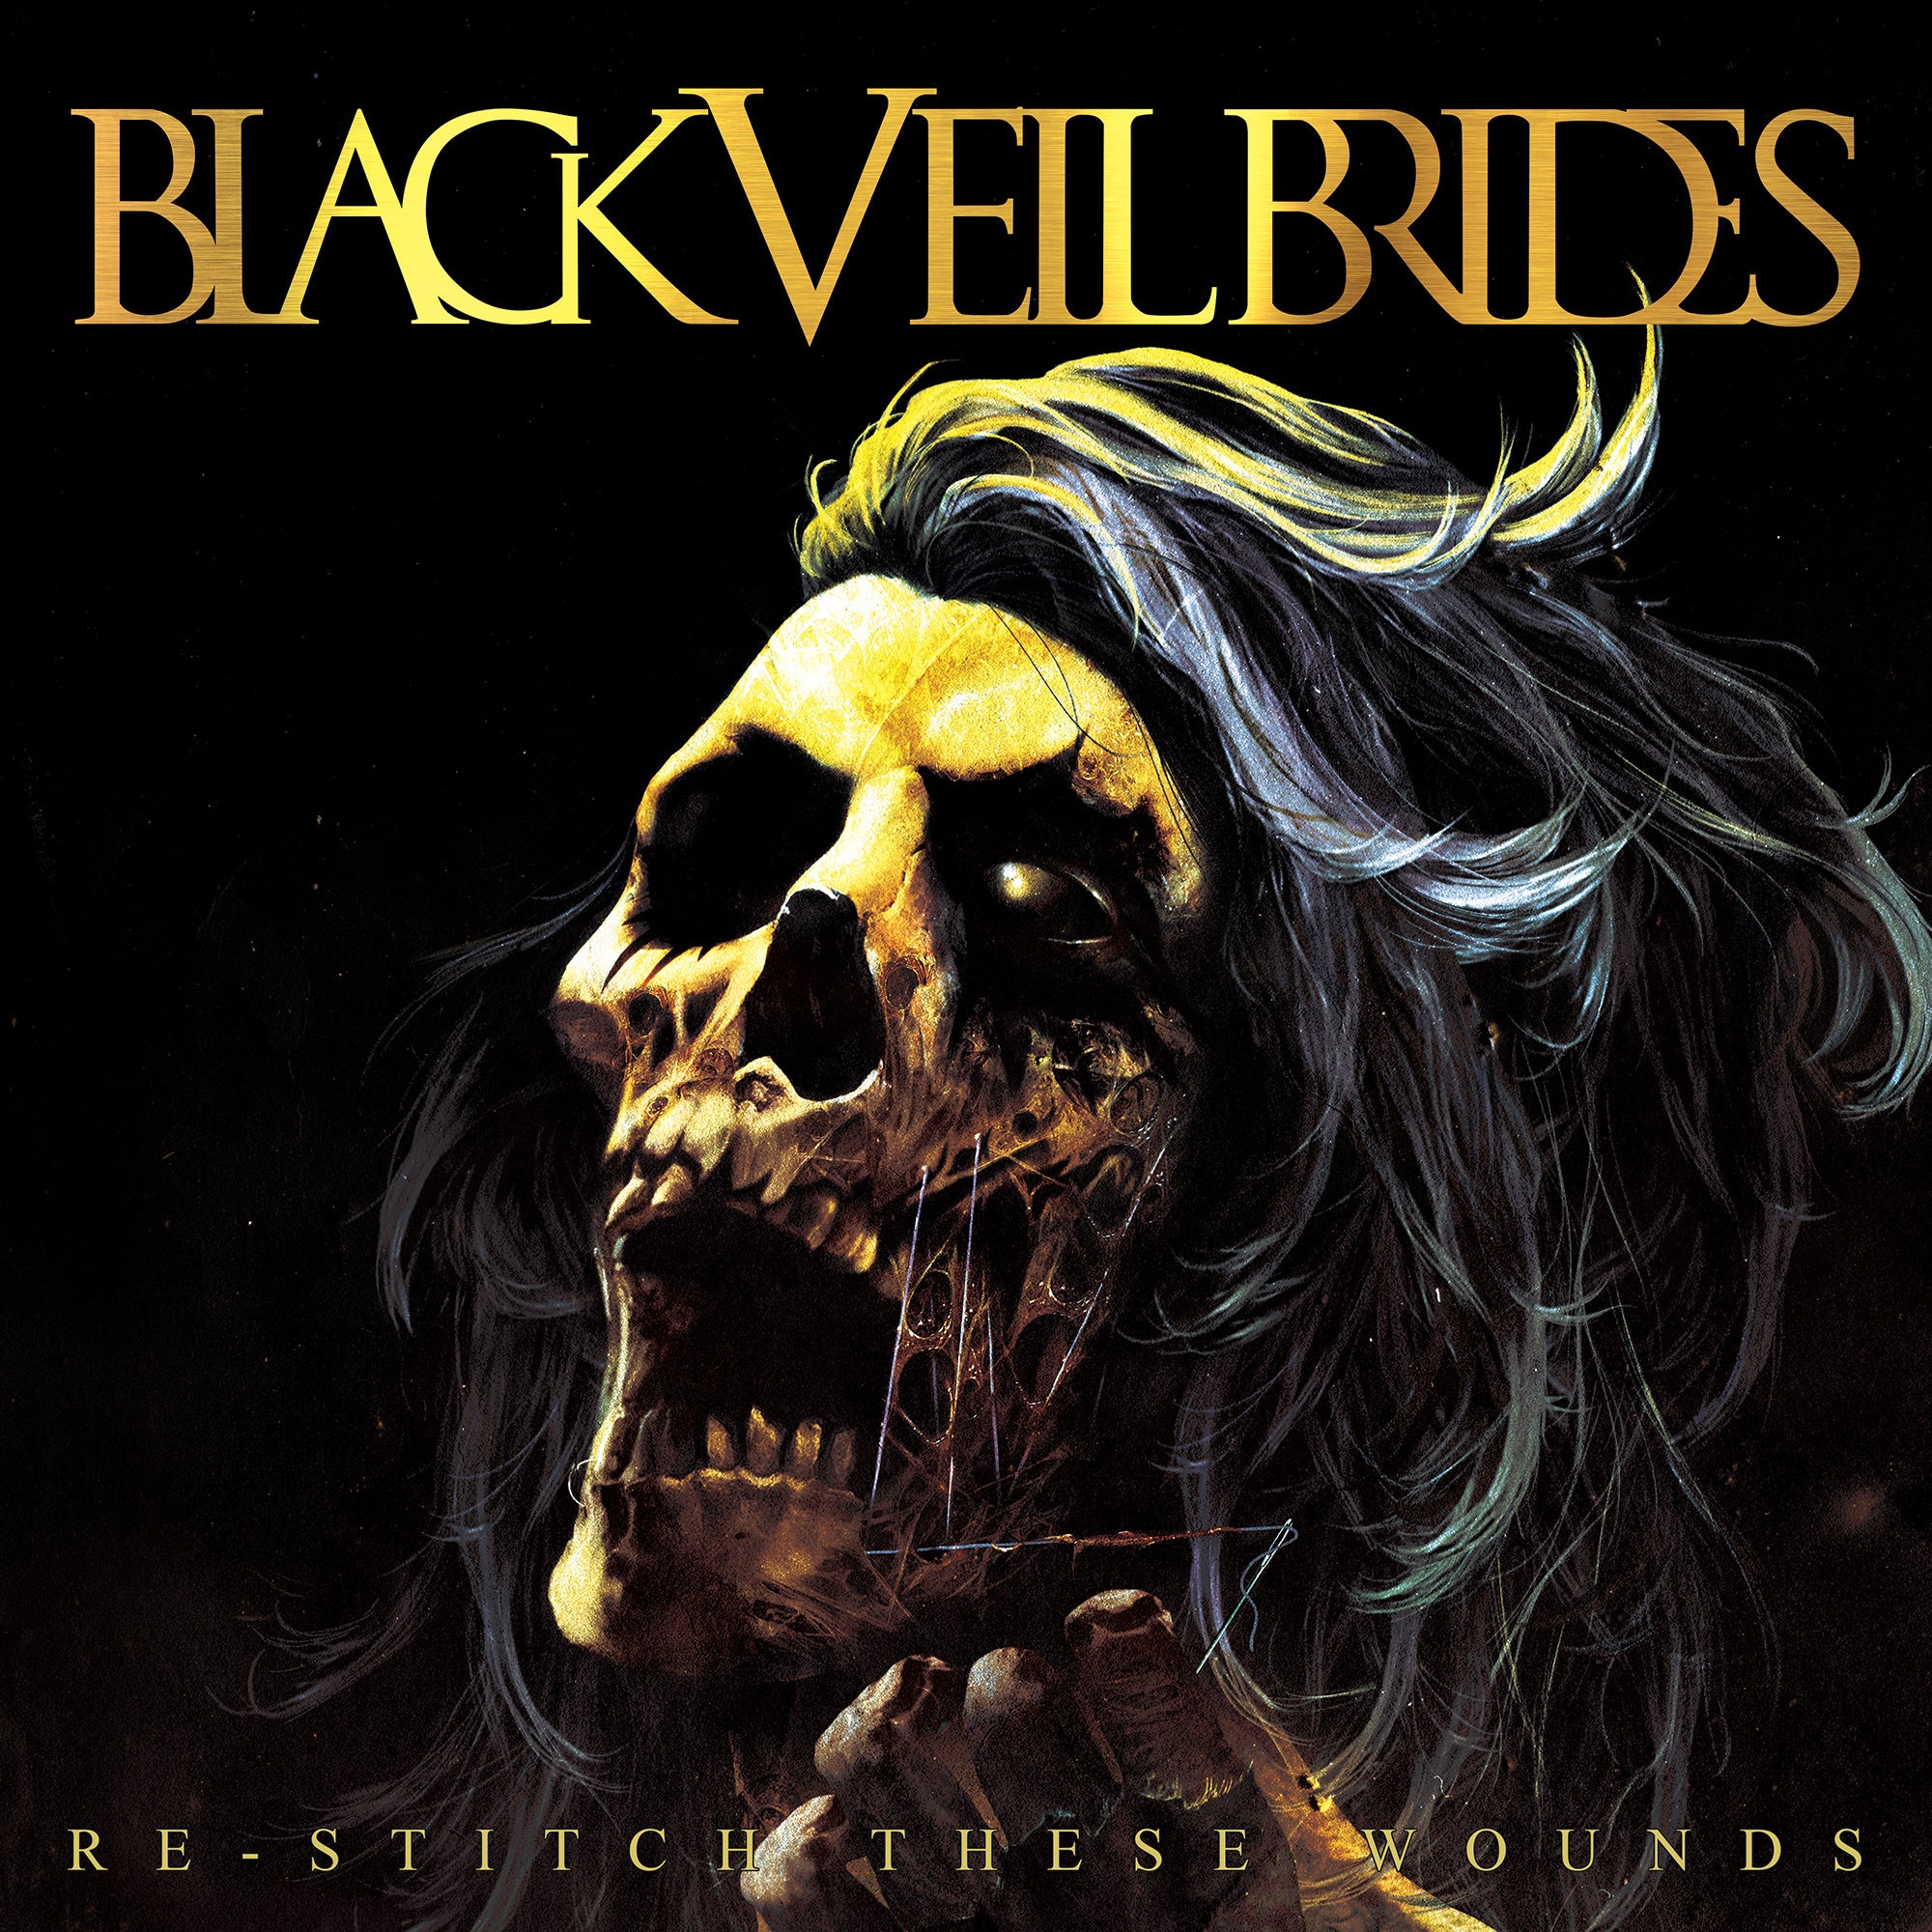 Black Veil Brides - Re-Stitch These Wounds (2010/2020) [FLAC 24bit/48kHz]